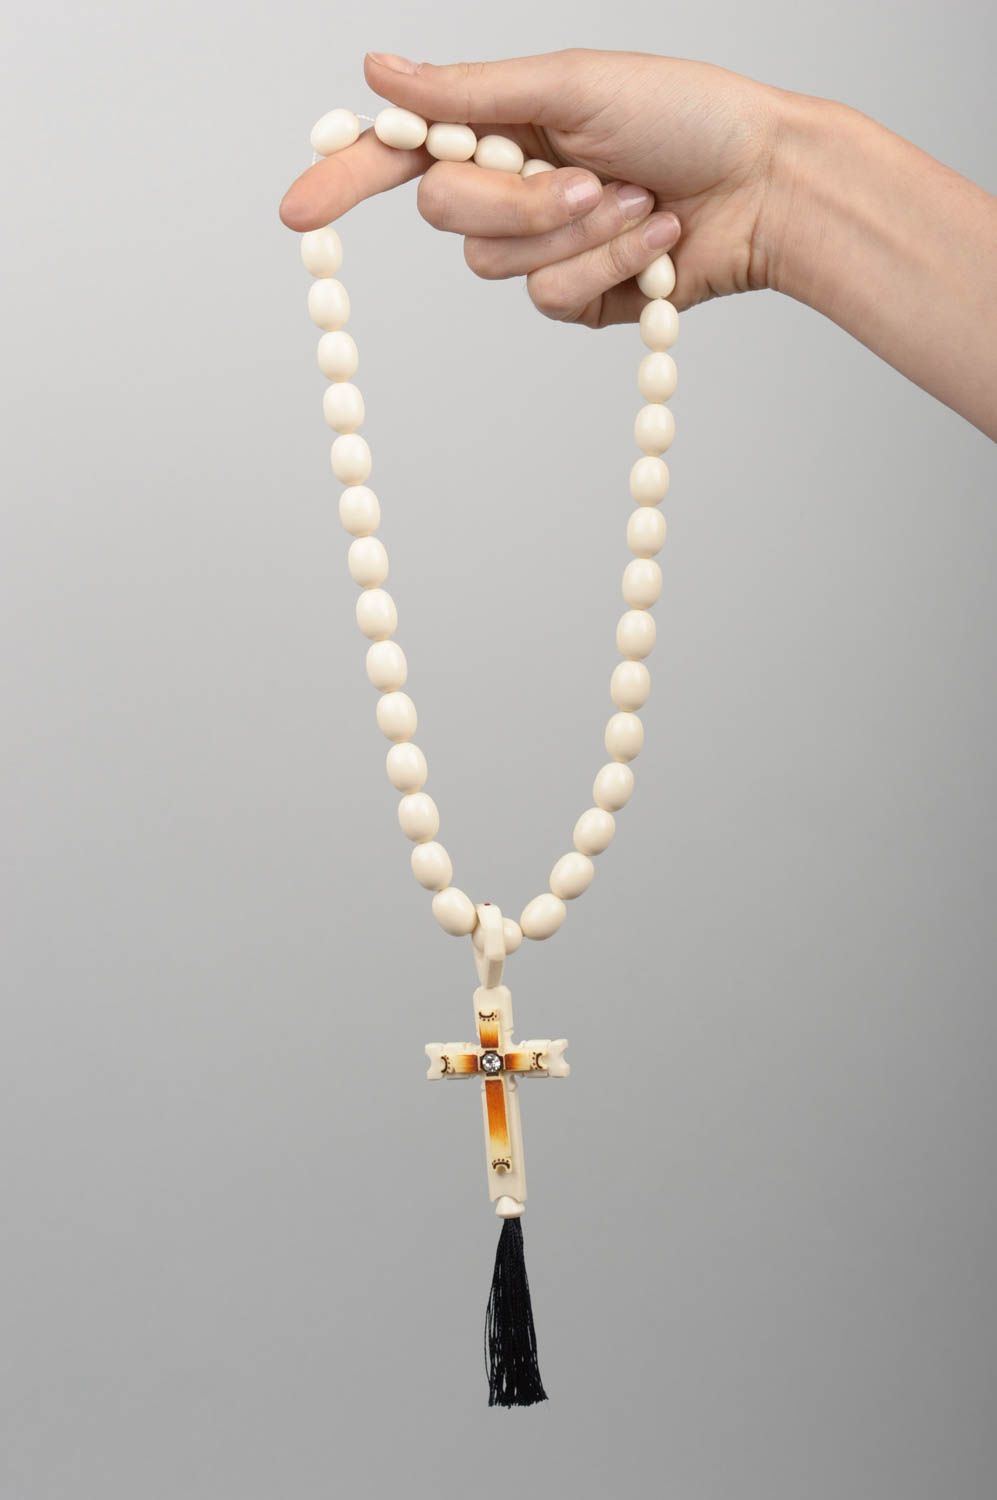 Handmade religious jewelry rosary beads prayer rope spiritual gifts mens gifts photo 5